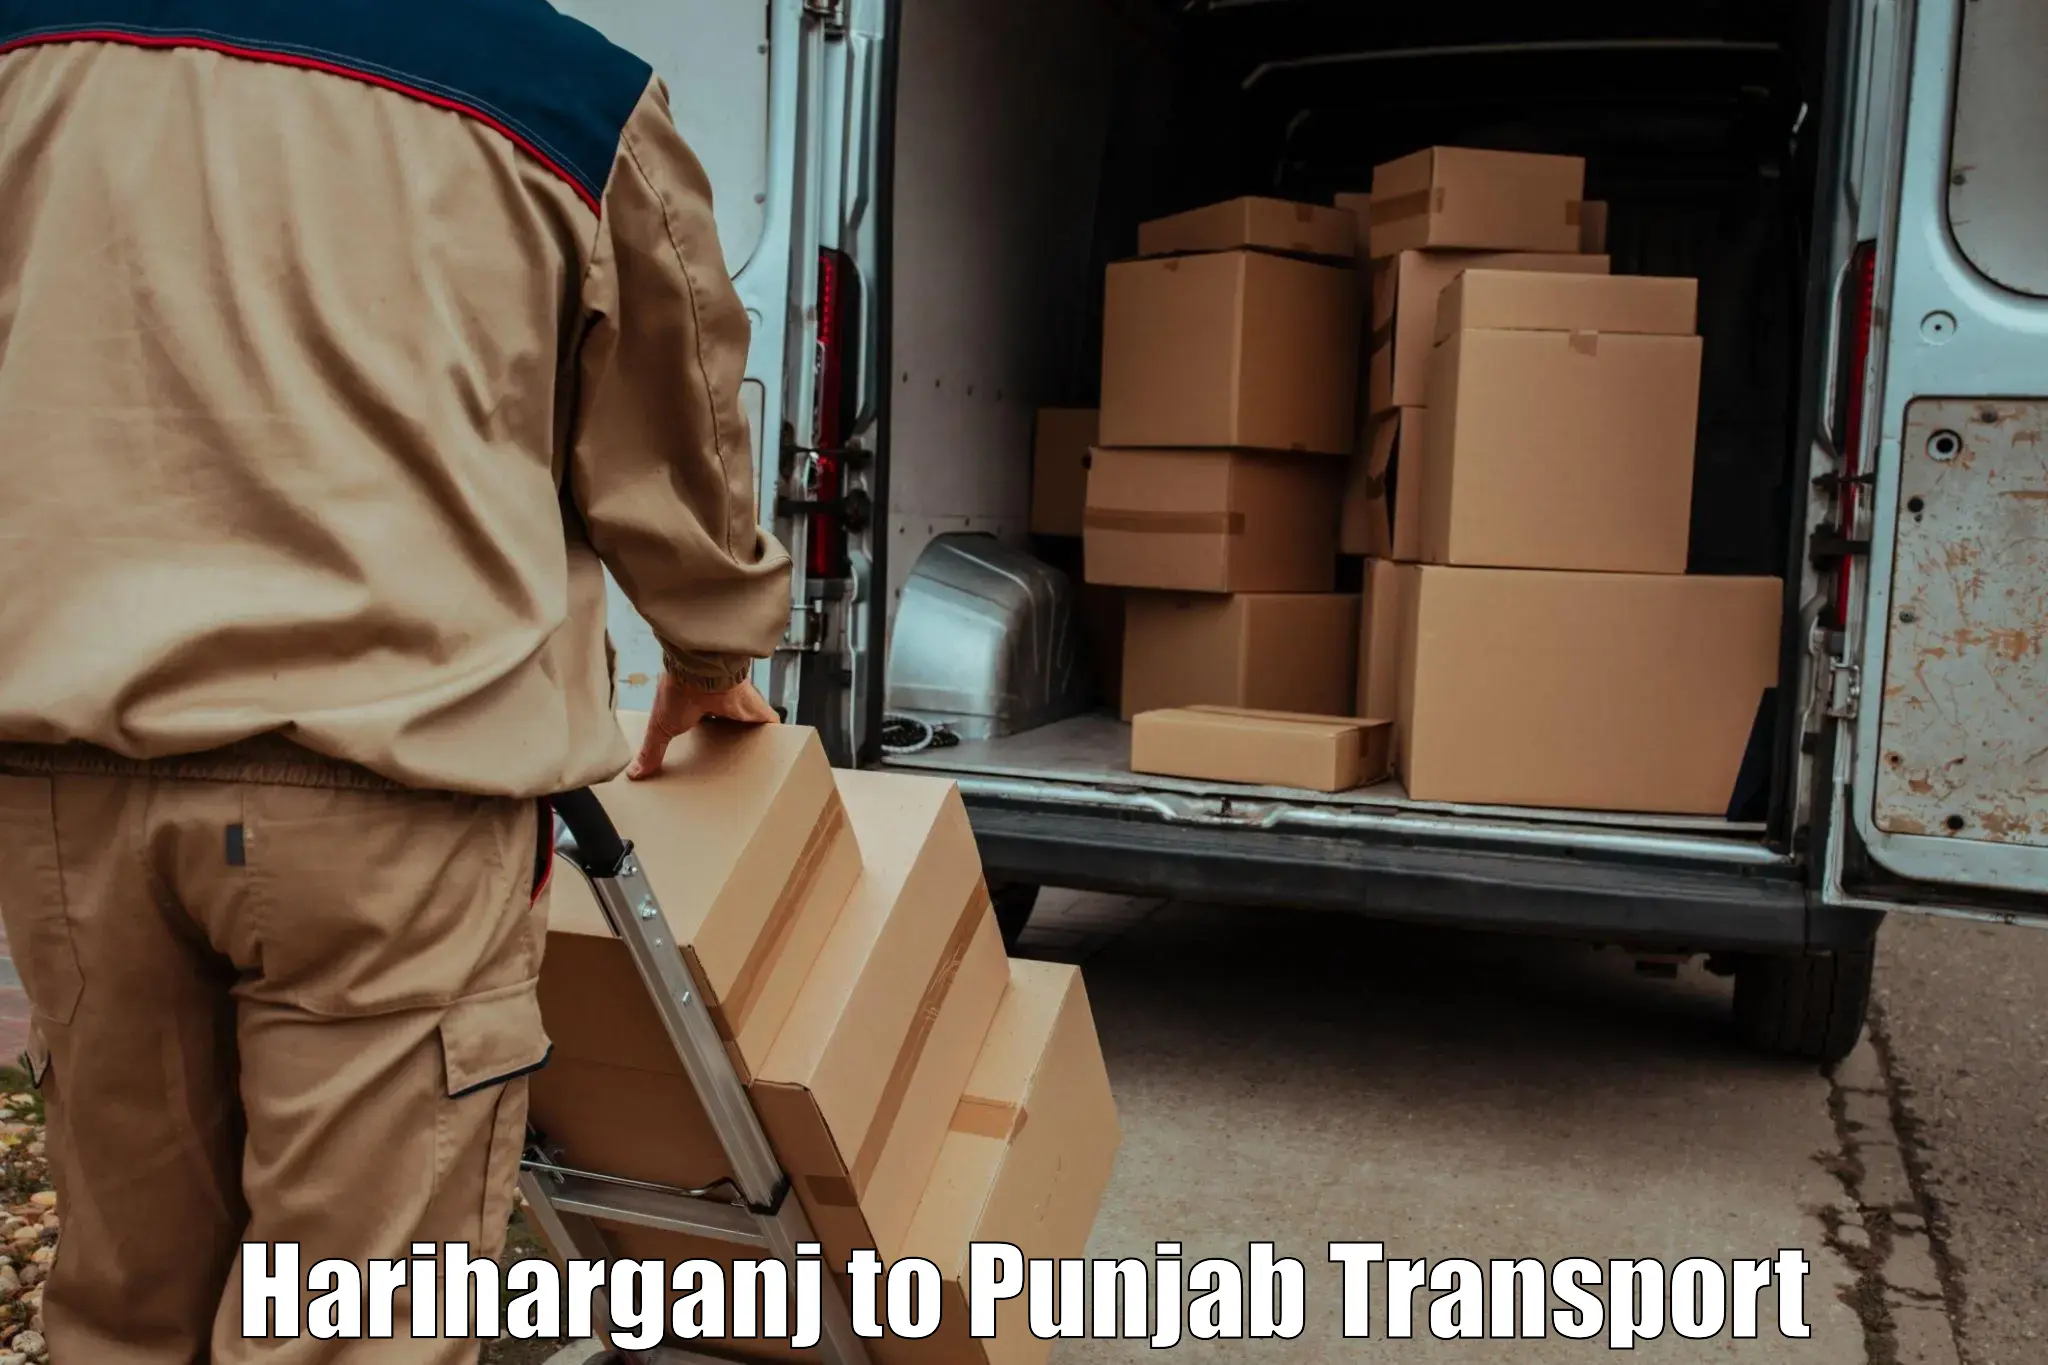 Transport shared services in Hariharganj to Jalandhar